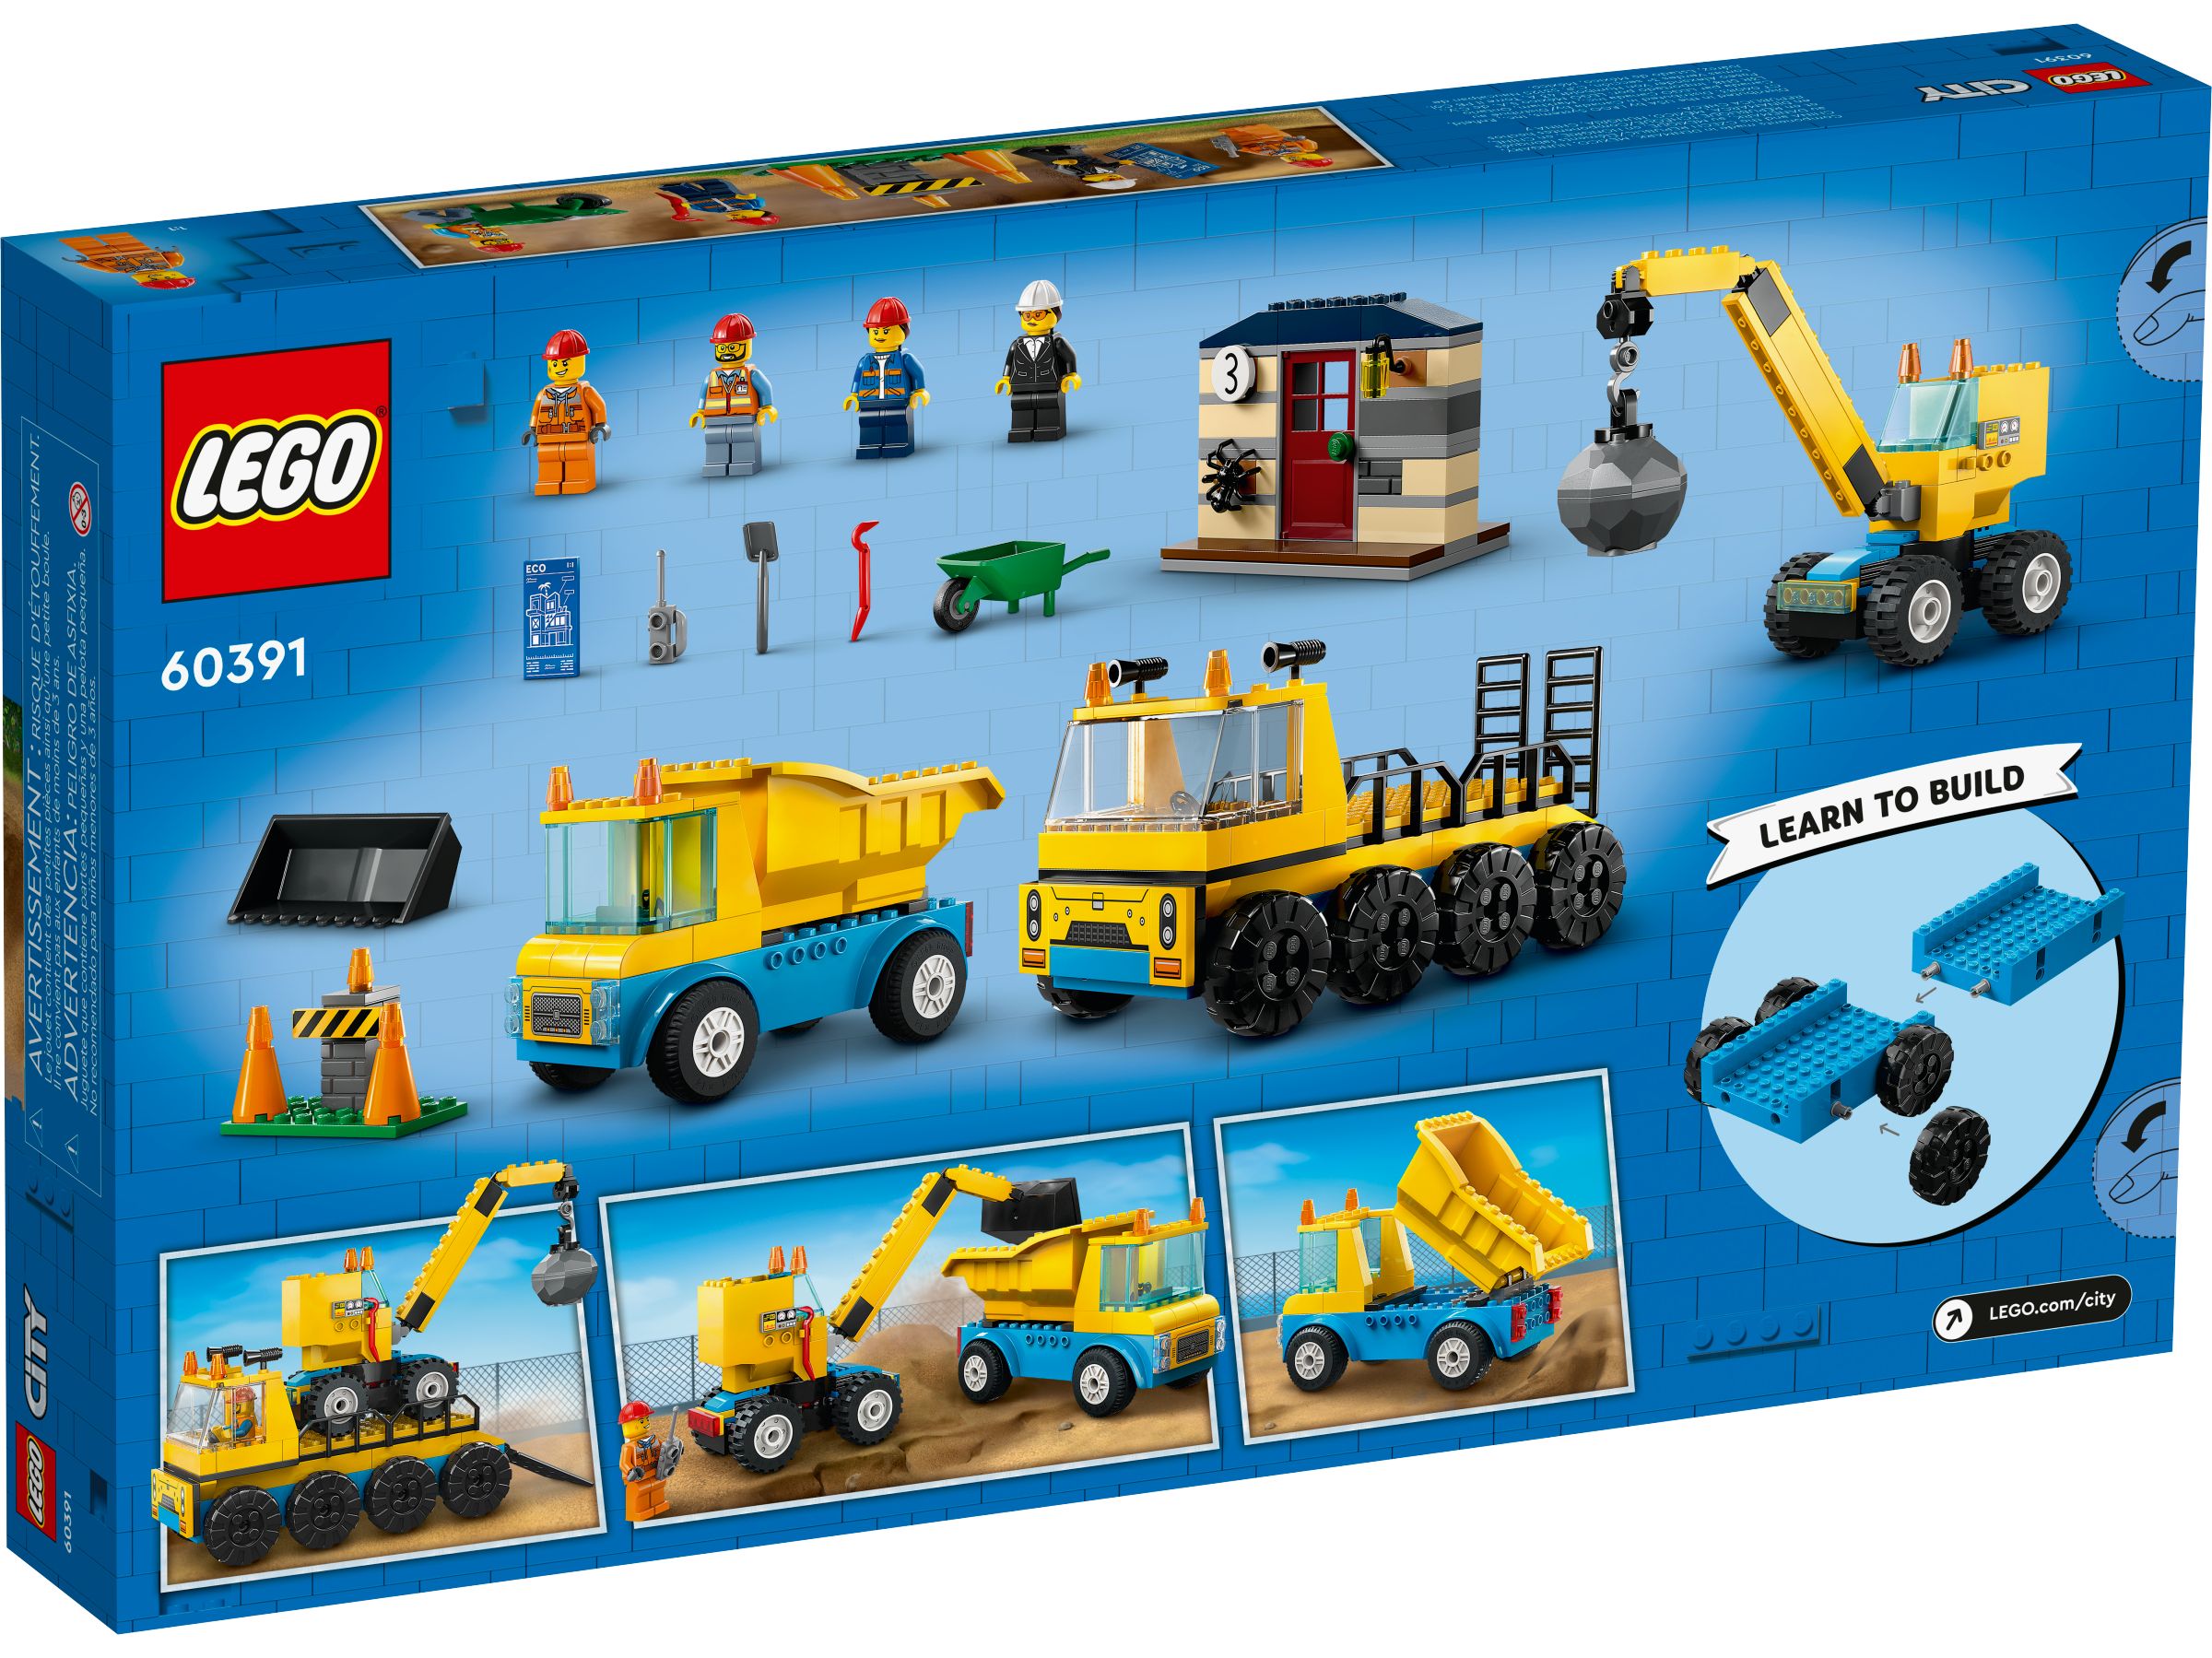 LEGO City 60391 Baufahrzeuge und Kran mit Abrissbirne LEGO_60391_Box5_v39.jpg